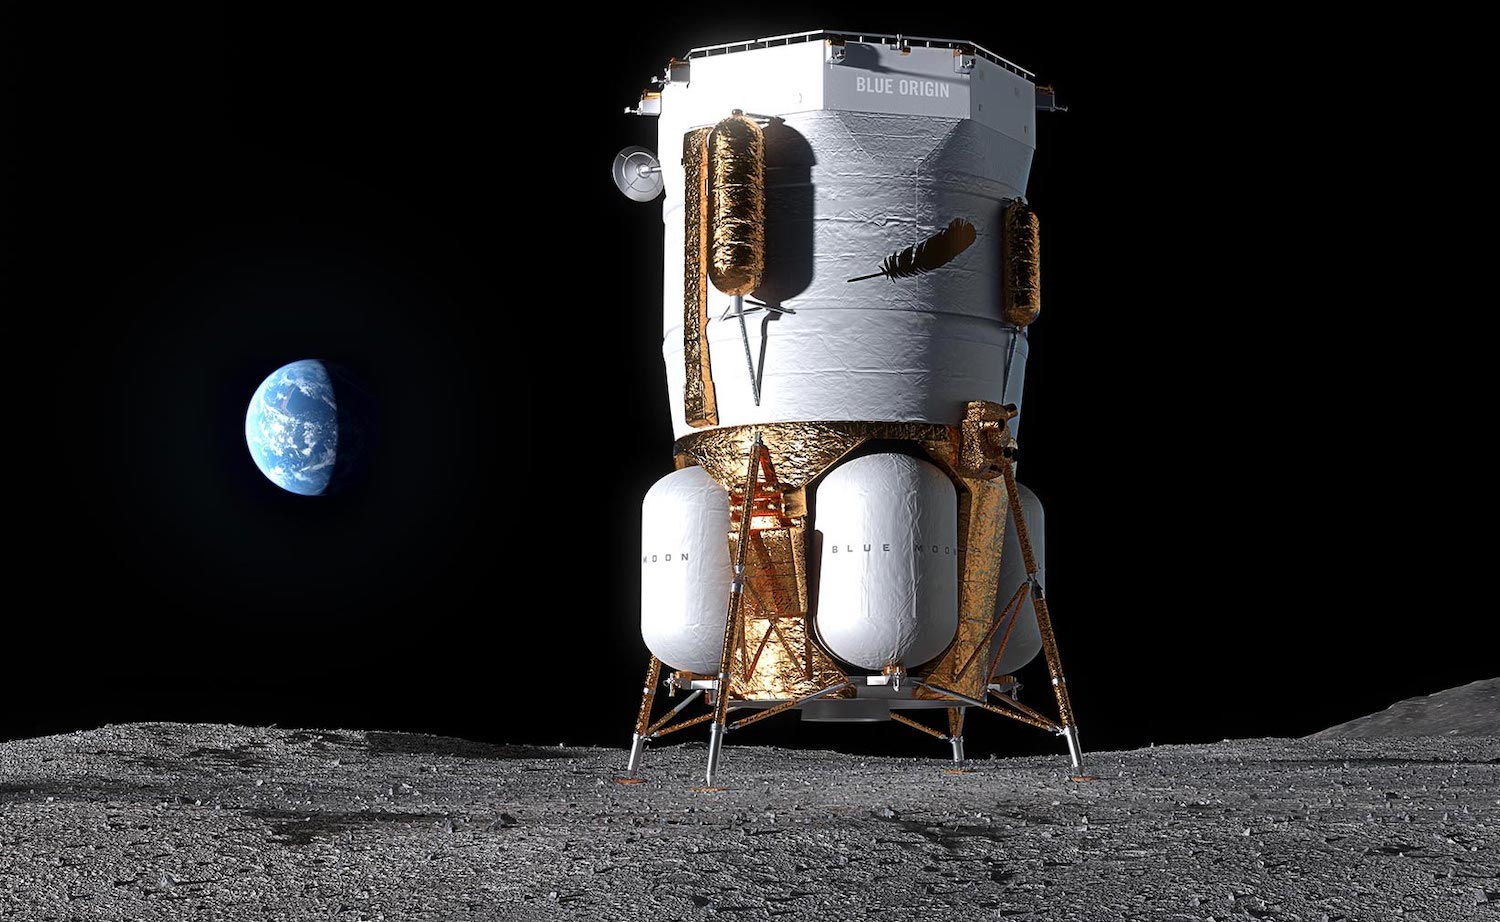 فرودگر Blue Origin در ماه چگونه به نظر می رسد.